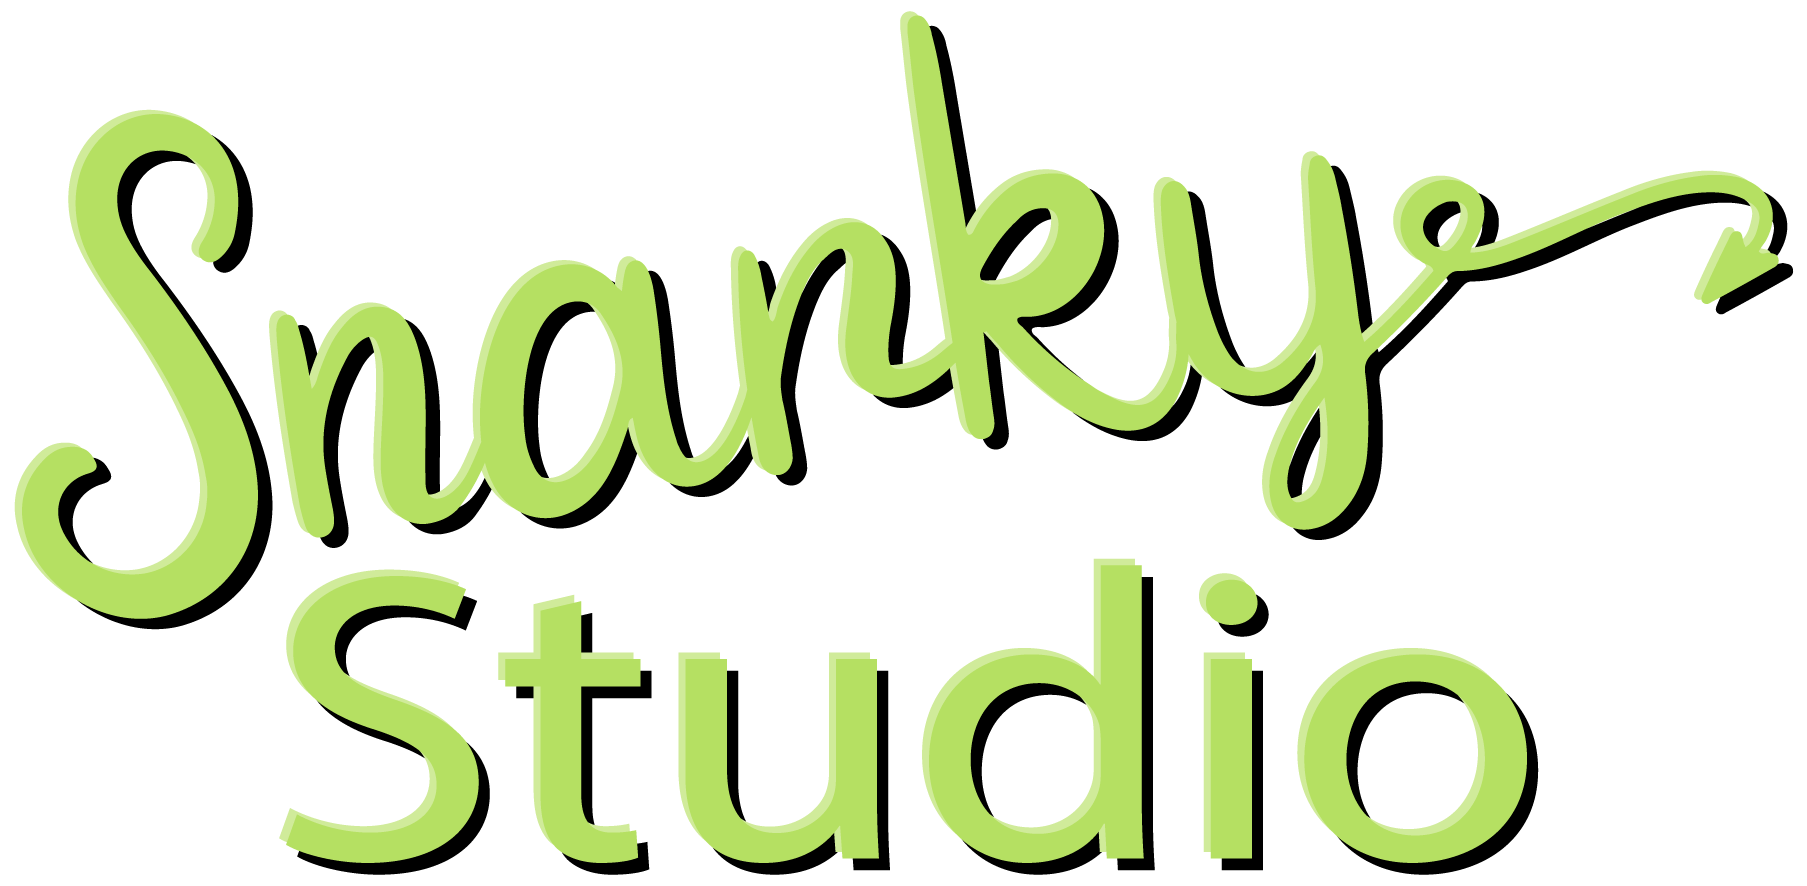 Snarky Studio